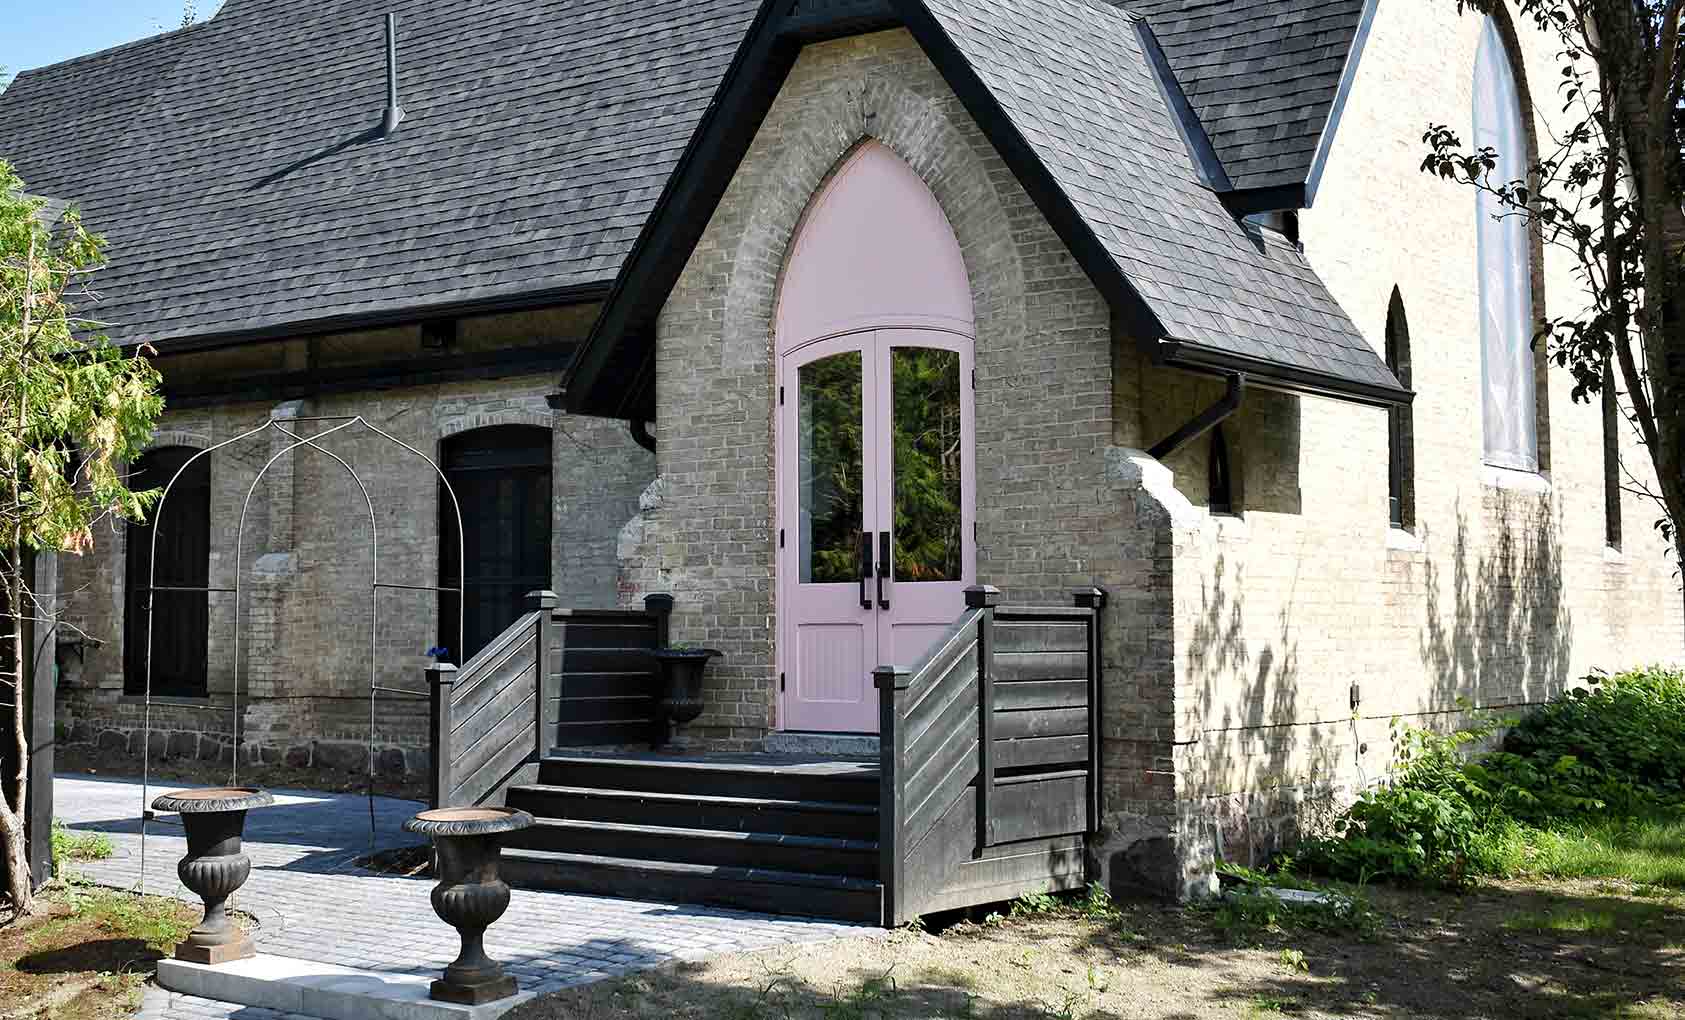 تحولت كنيسة من 1880s-Era إلى منزل لقضاء العطلات في أونتاريو ، بتصميم * إسفنج